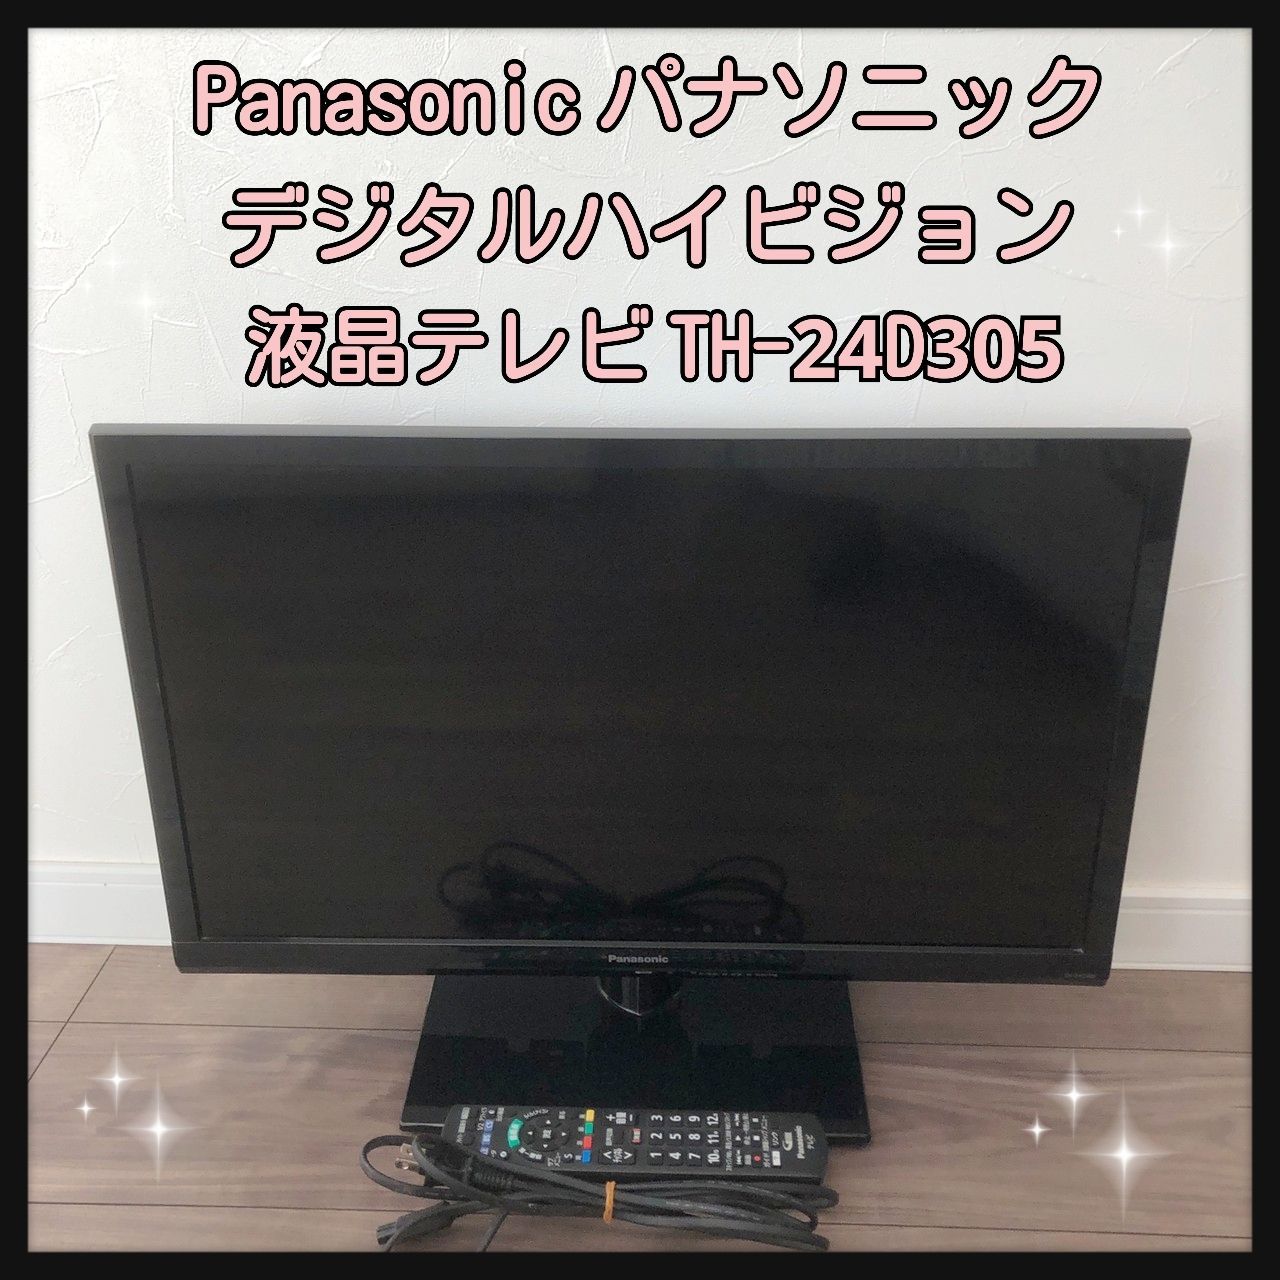 Panasonic パナソニック ハイビジョン液晶テレビ TH-24D305 - メルカリ